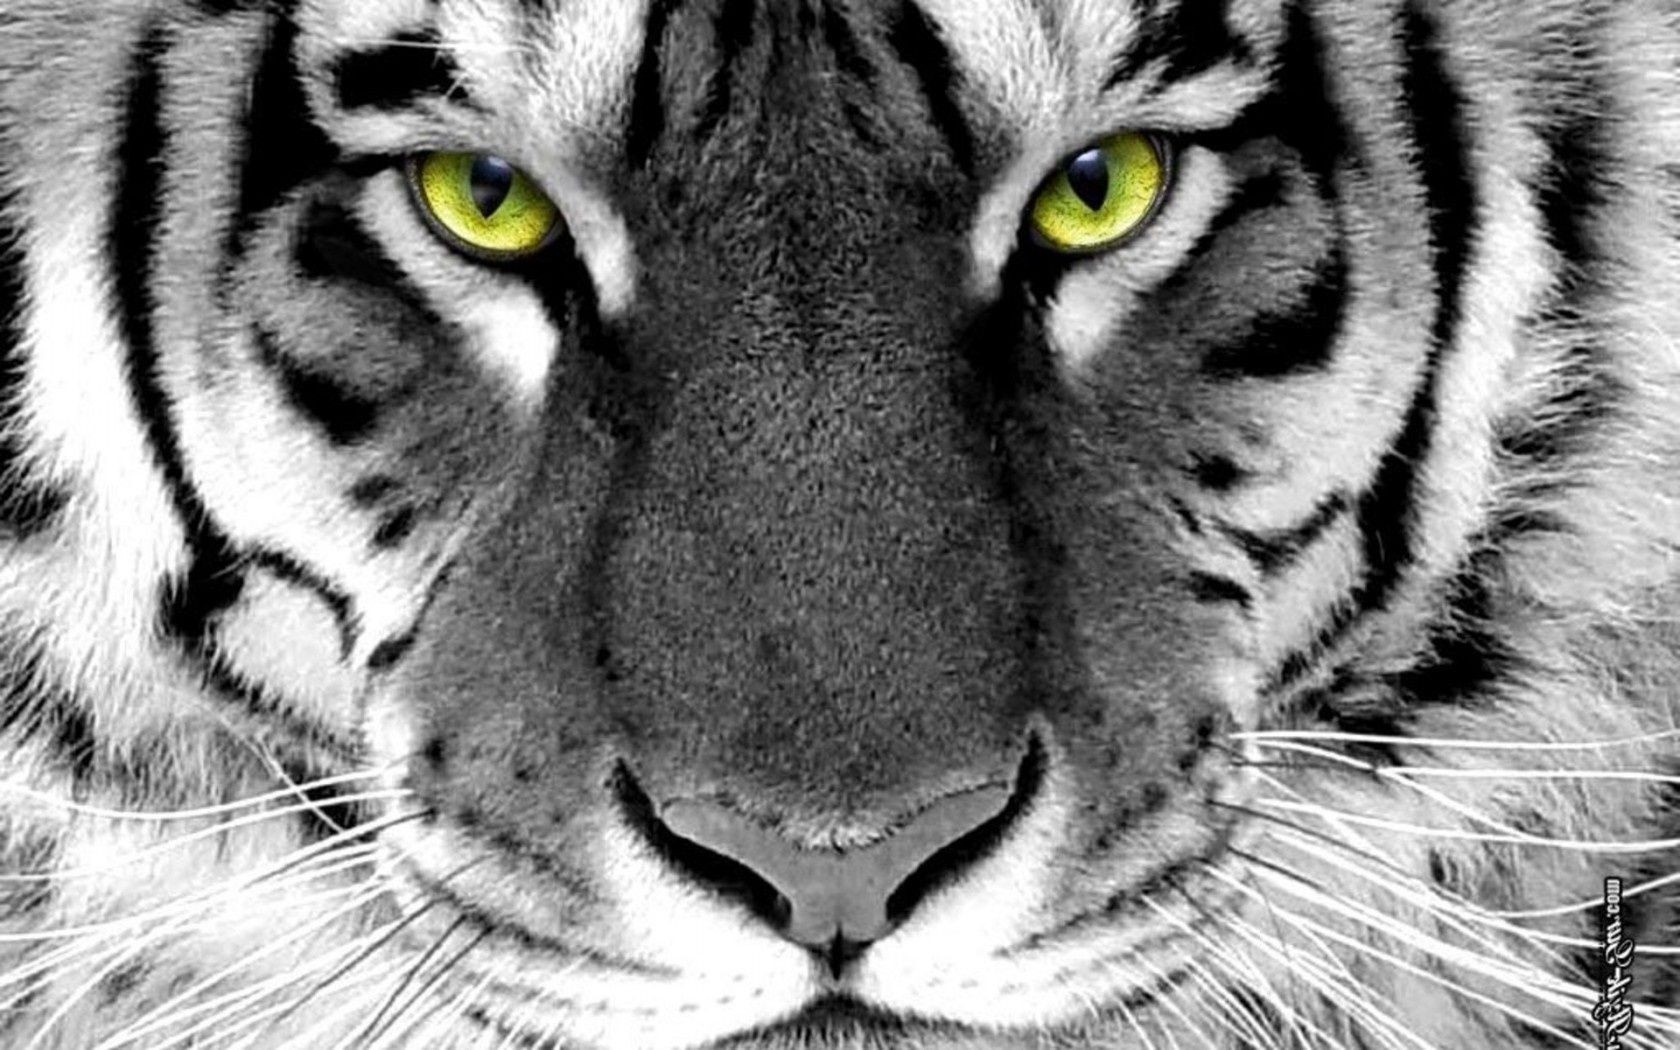 тигры кошка тигр животное дикой природы мех портрет млекопитающее полоса хищник зоопарк дикий глаз большой сибирский джунгли глядя мясоед охотник природа глава